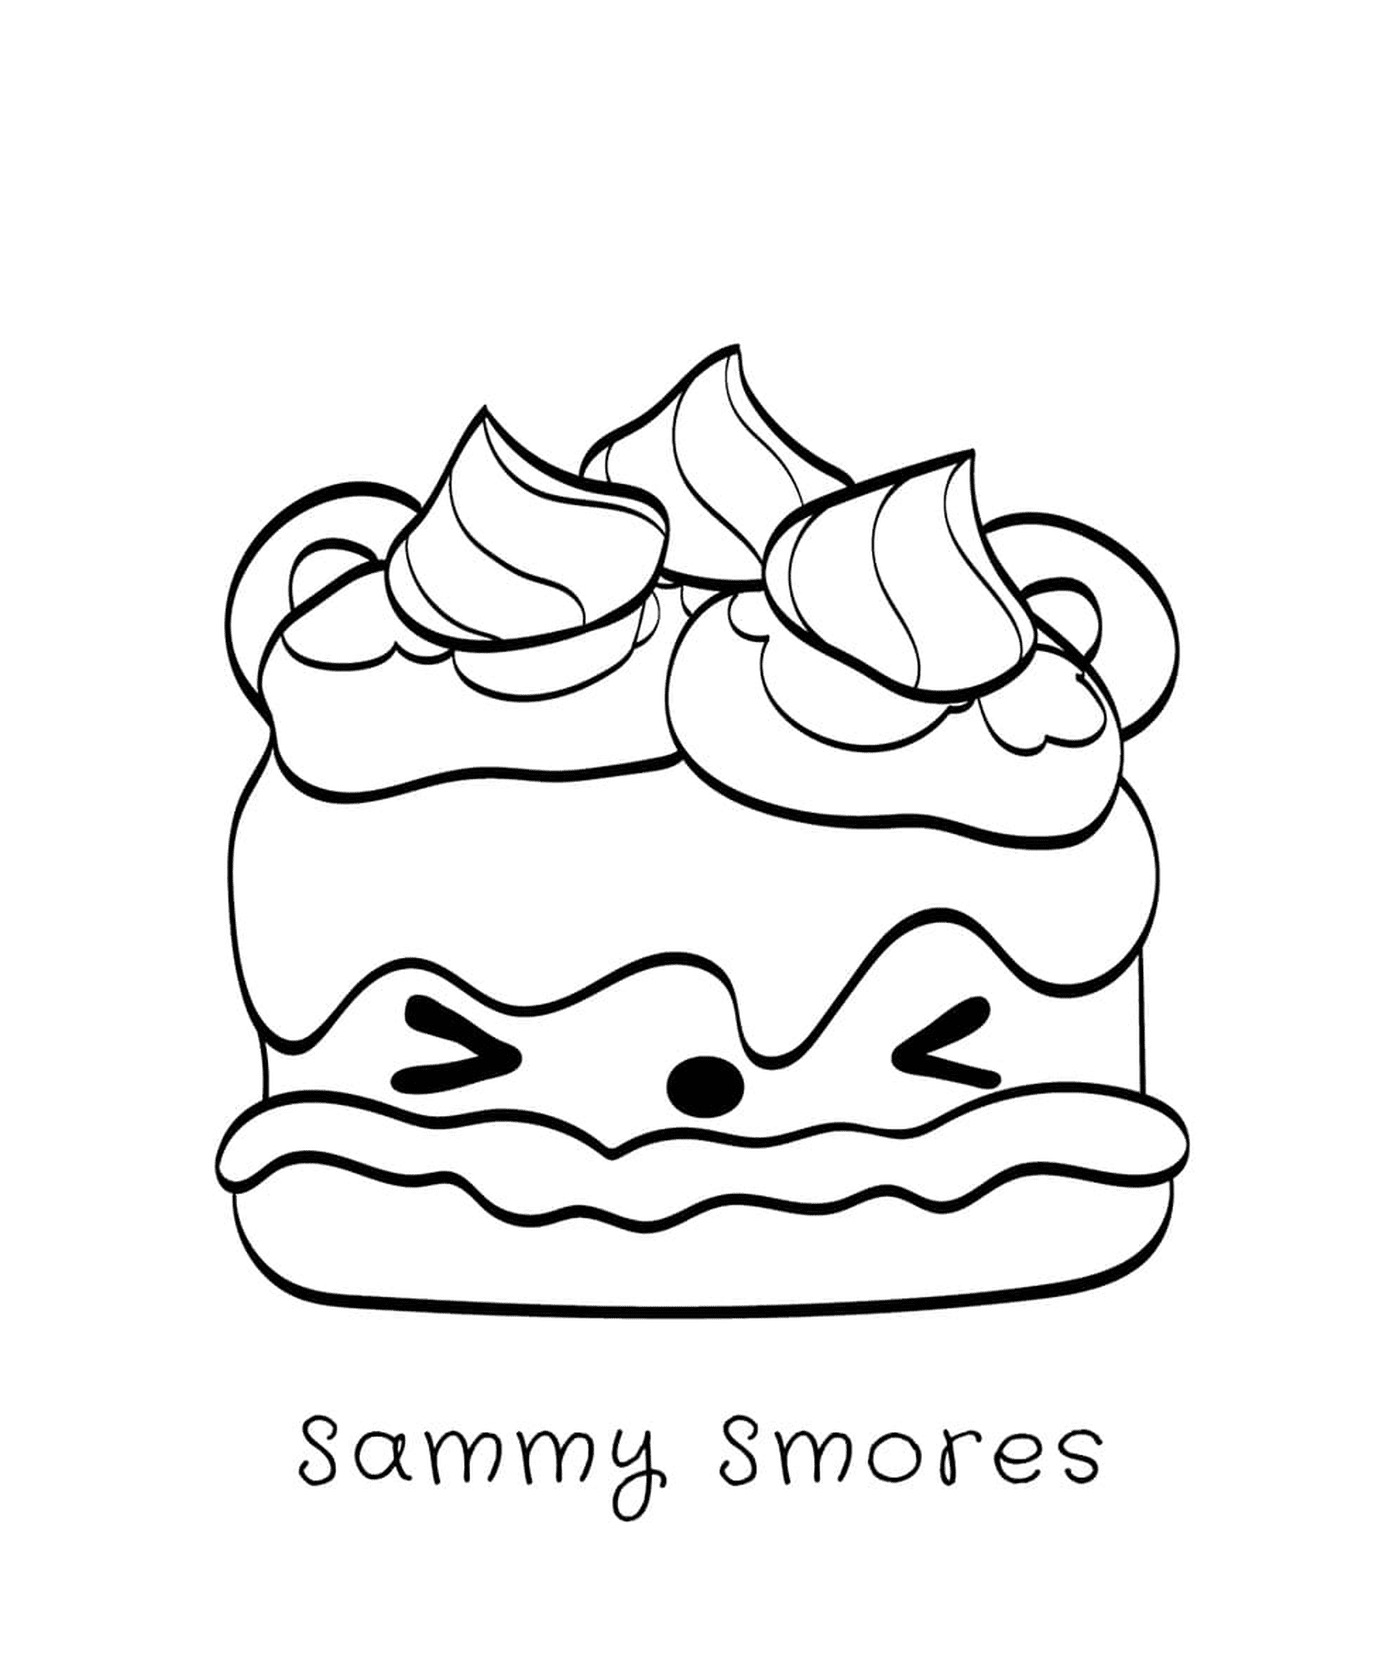  Sammy S'mores, a gourmand 